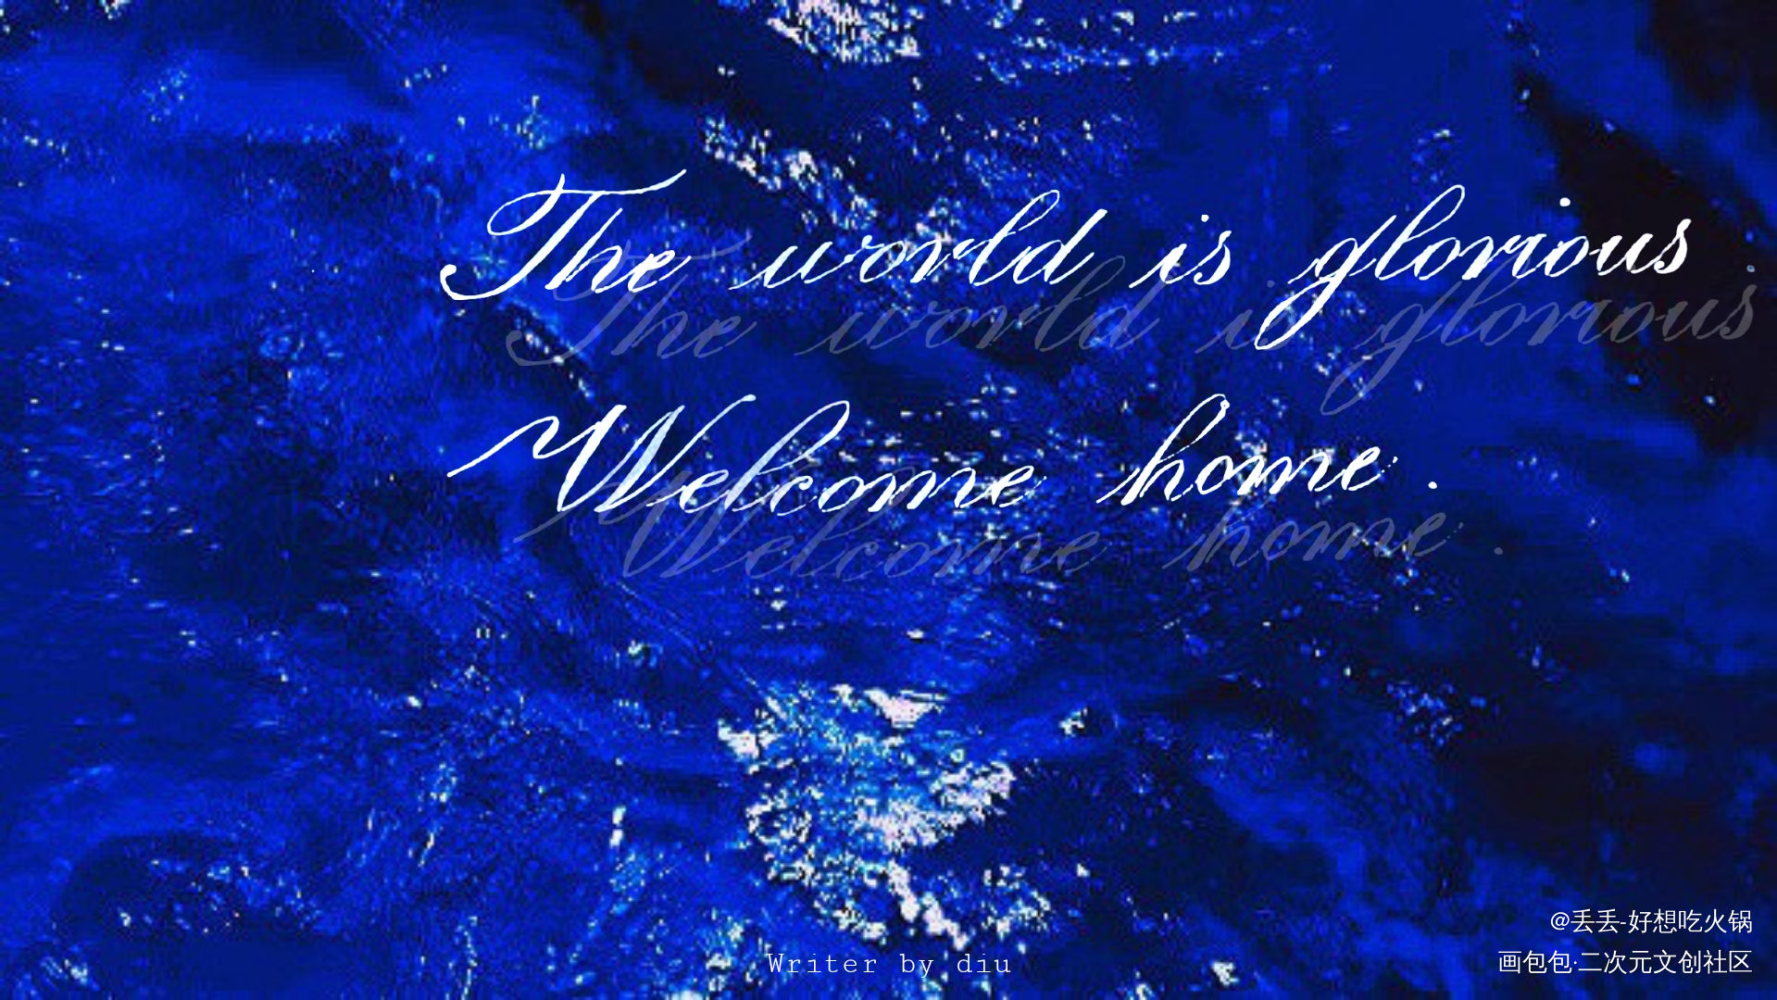 『世界灿烂盛大，欢迎回家』_全球高考英文手写英文书法字体设计原创手写见字如晤绘画作品